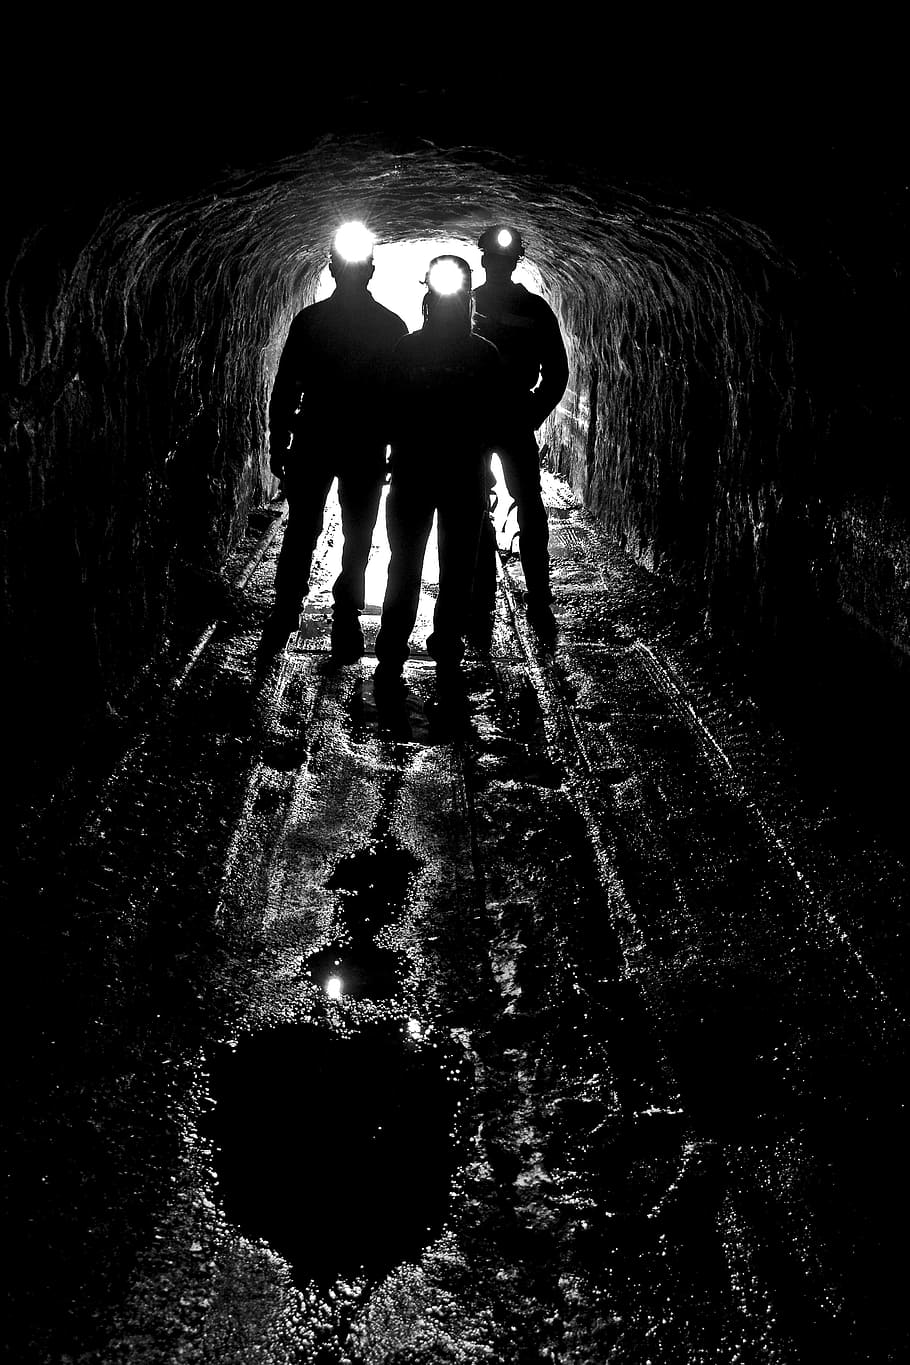 siluet, tiga, orang, gua, headlamp, tambang batubara, pintu masuk, lampu kepala, peneliti, pertambangan